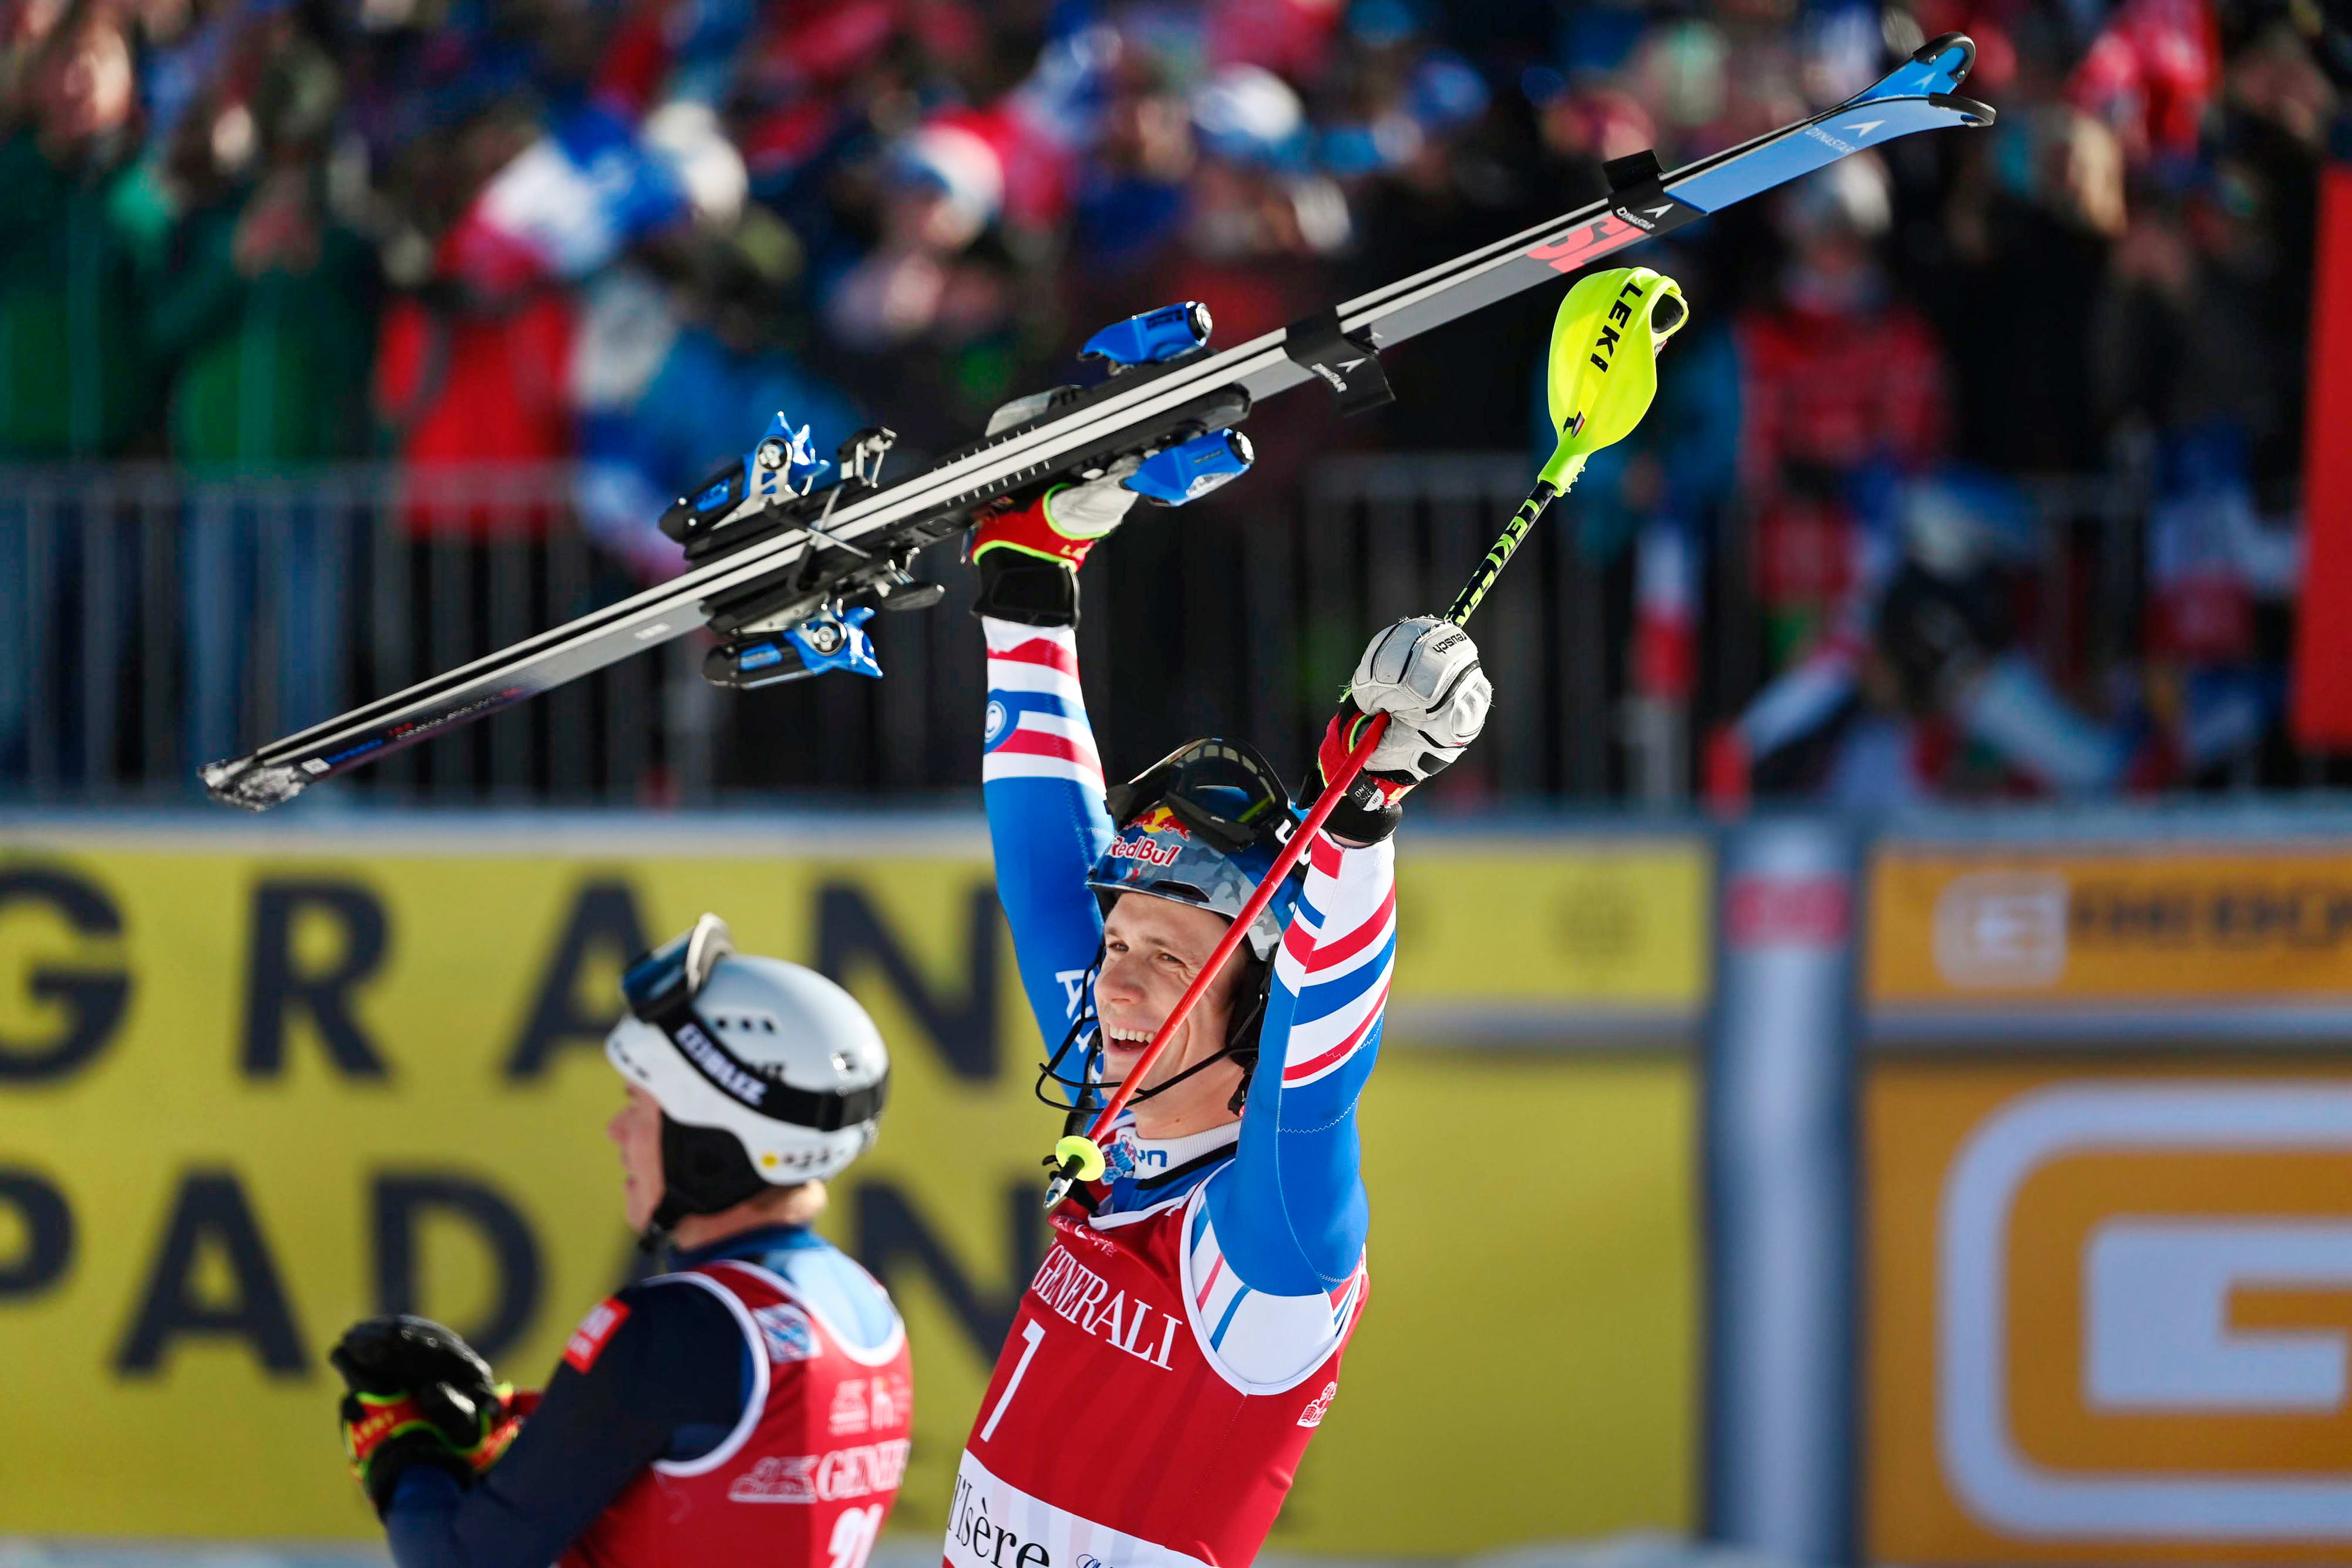 Ski alpin : Clément Noël raconte le pire et le meilleur de sa carrière